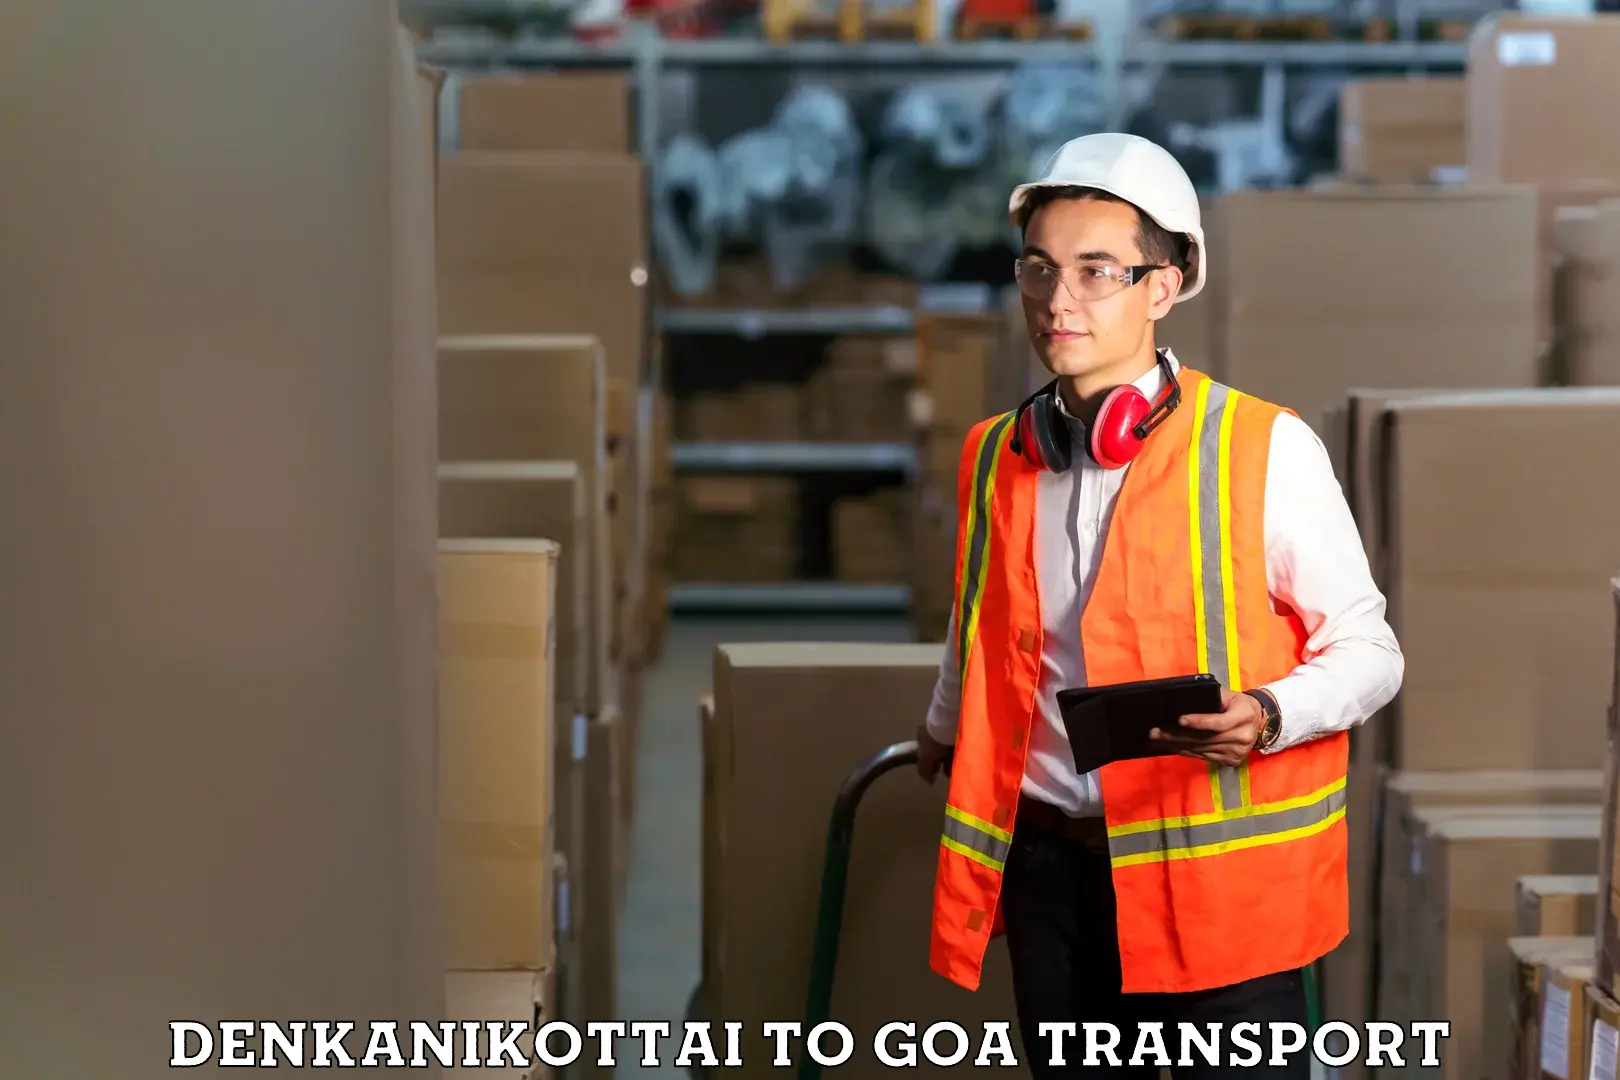 Shipping services in Denkanikottai to South Goa